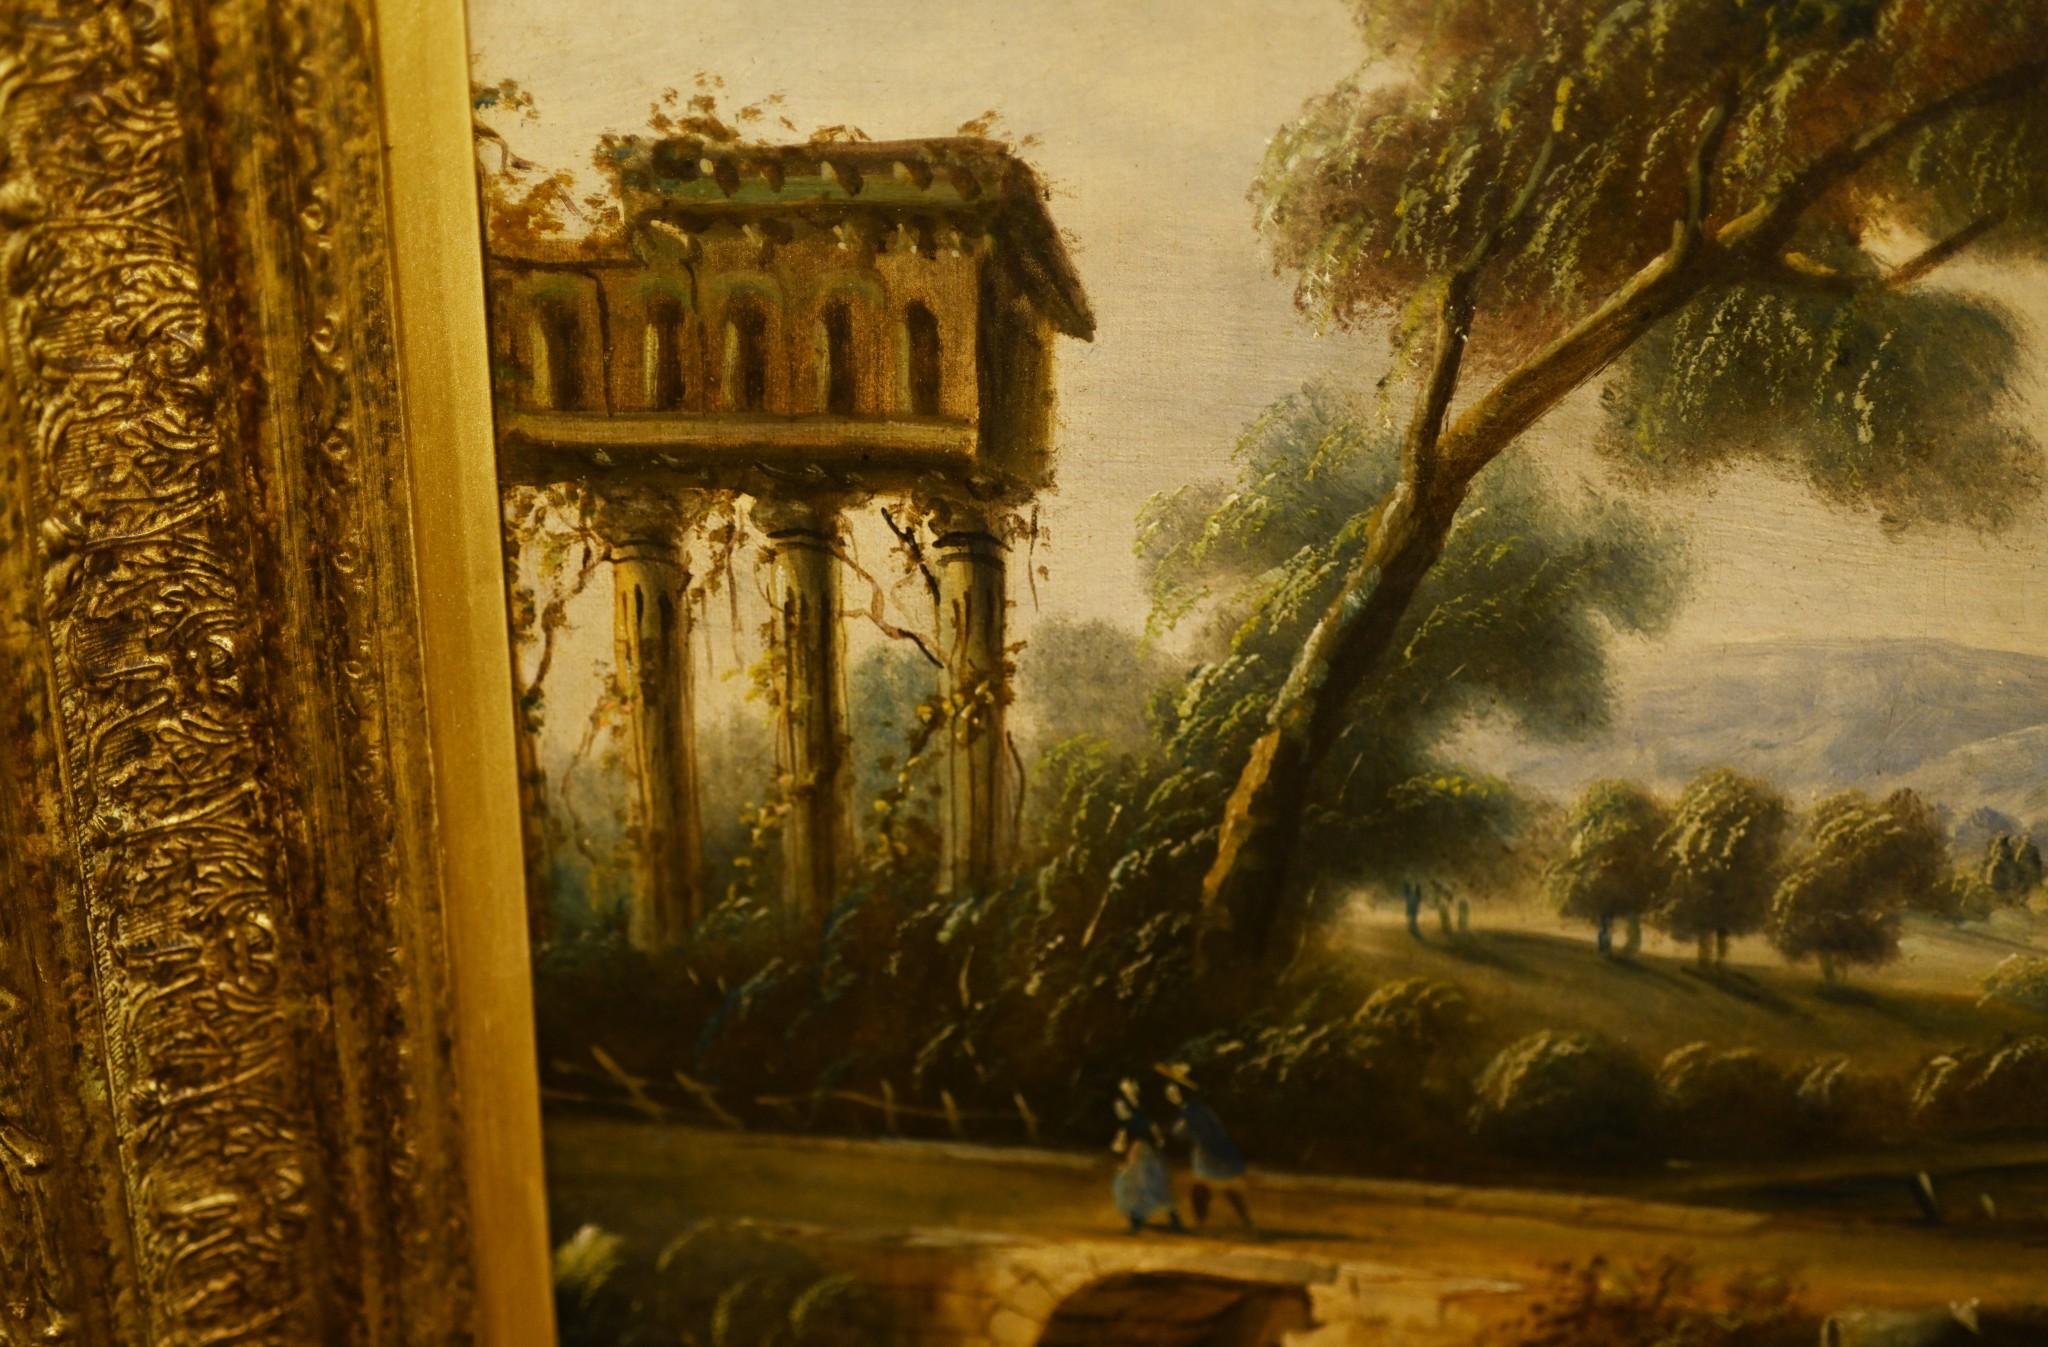 Magnifique peinture à l'huile italienne représentant un paysage toscan classique
Grande œuvre d'art du Grand Tour avec le temple en ruine à gauche de la peinture.
Le reste de l'œuvre montre un travail pastoral idyllique avec un pont en pierre